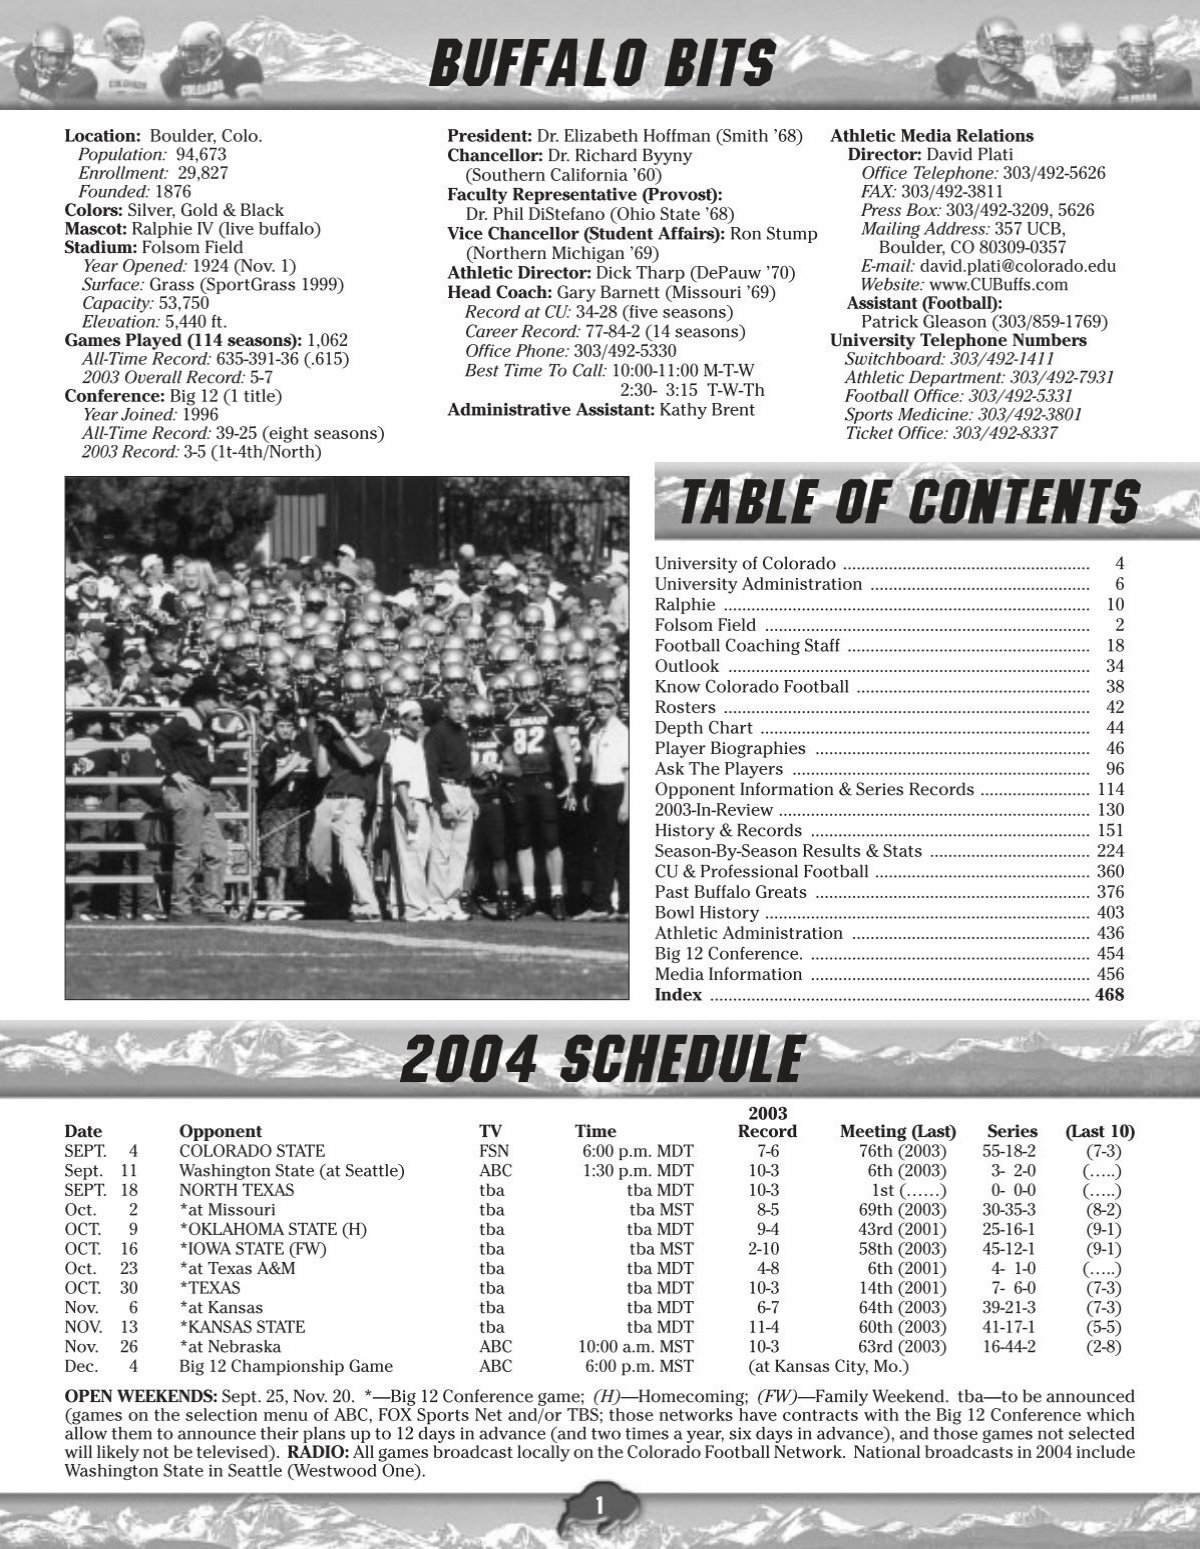 BUFFALO BITS 2004 SCHEDULE - Collegefootballdatadvds.com